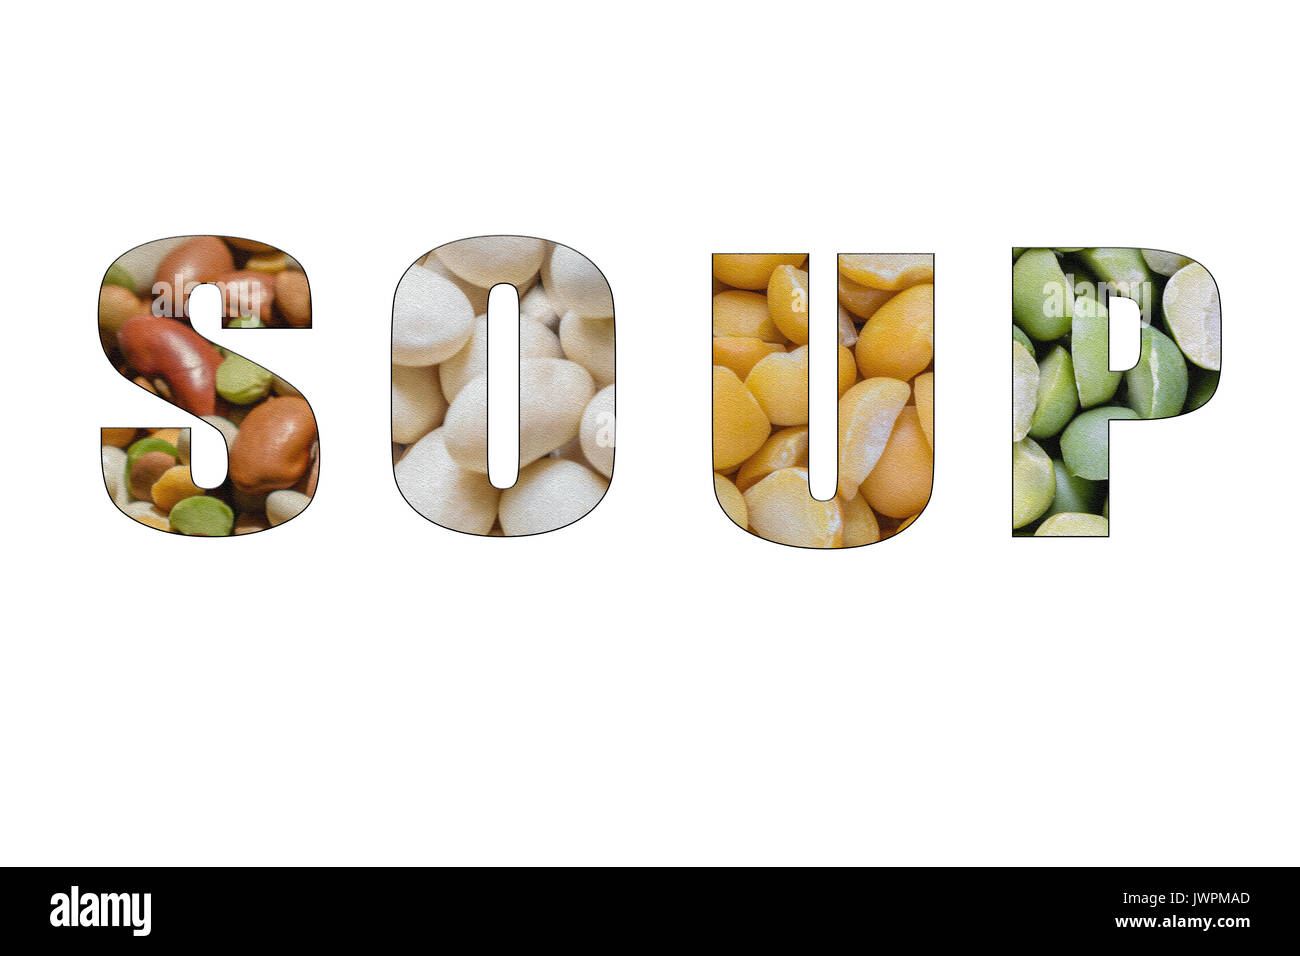 Isolierte Wort Suppe mit verschiedenen Bohnen im Hintergrund enthält Kichererbsen, Erbsen, Linsen, Bohnen und andere. Stockfoto